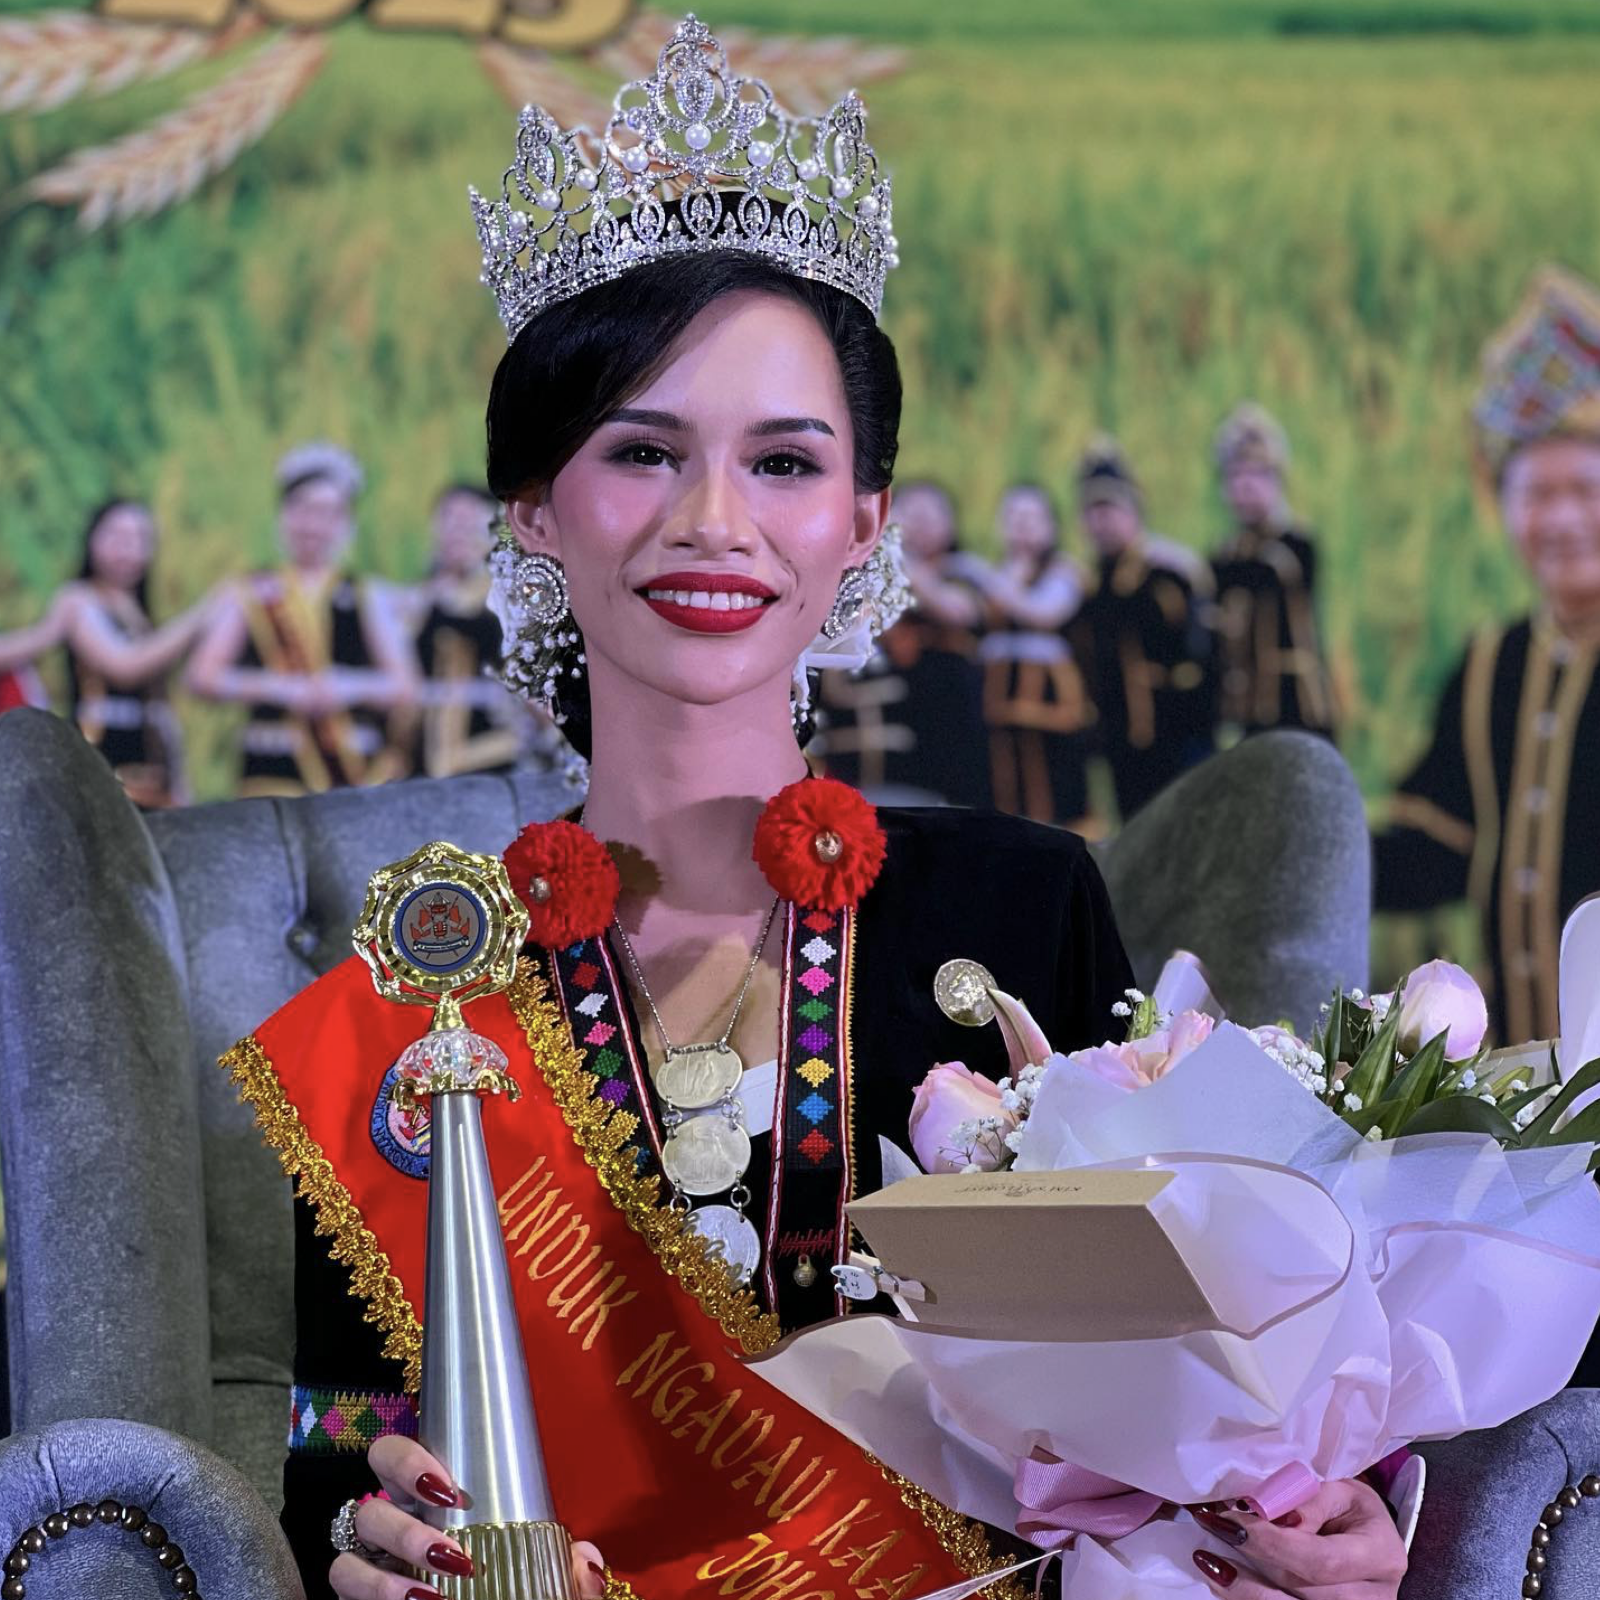 Malezyjska królowa piękności została pozbawiona tytułu za ''dziki taniec'' z półnagimi mężczyznami w Tajlandii. Zdjęcie.